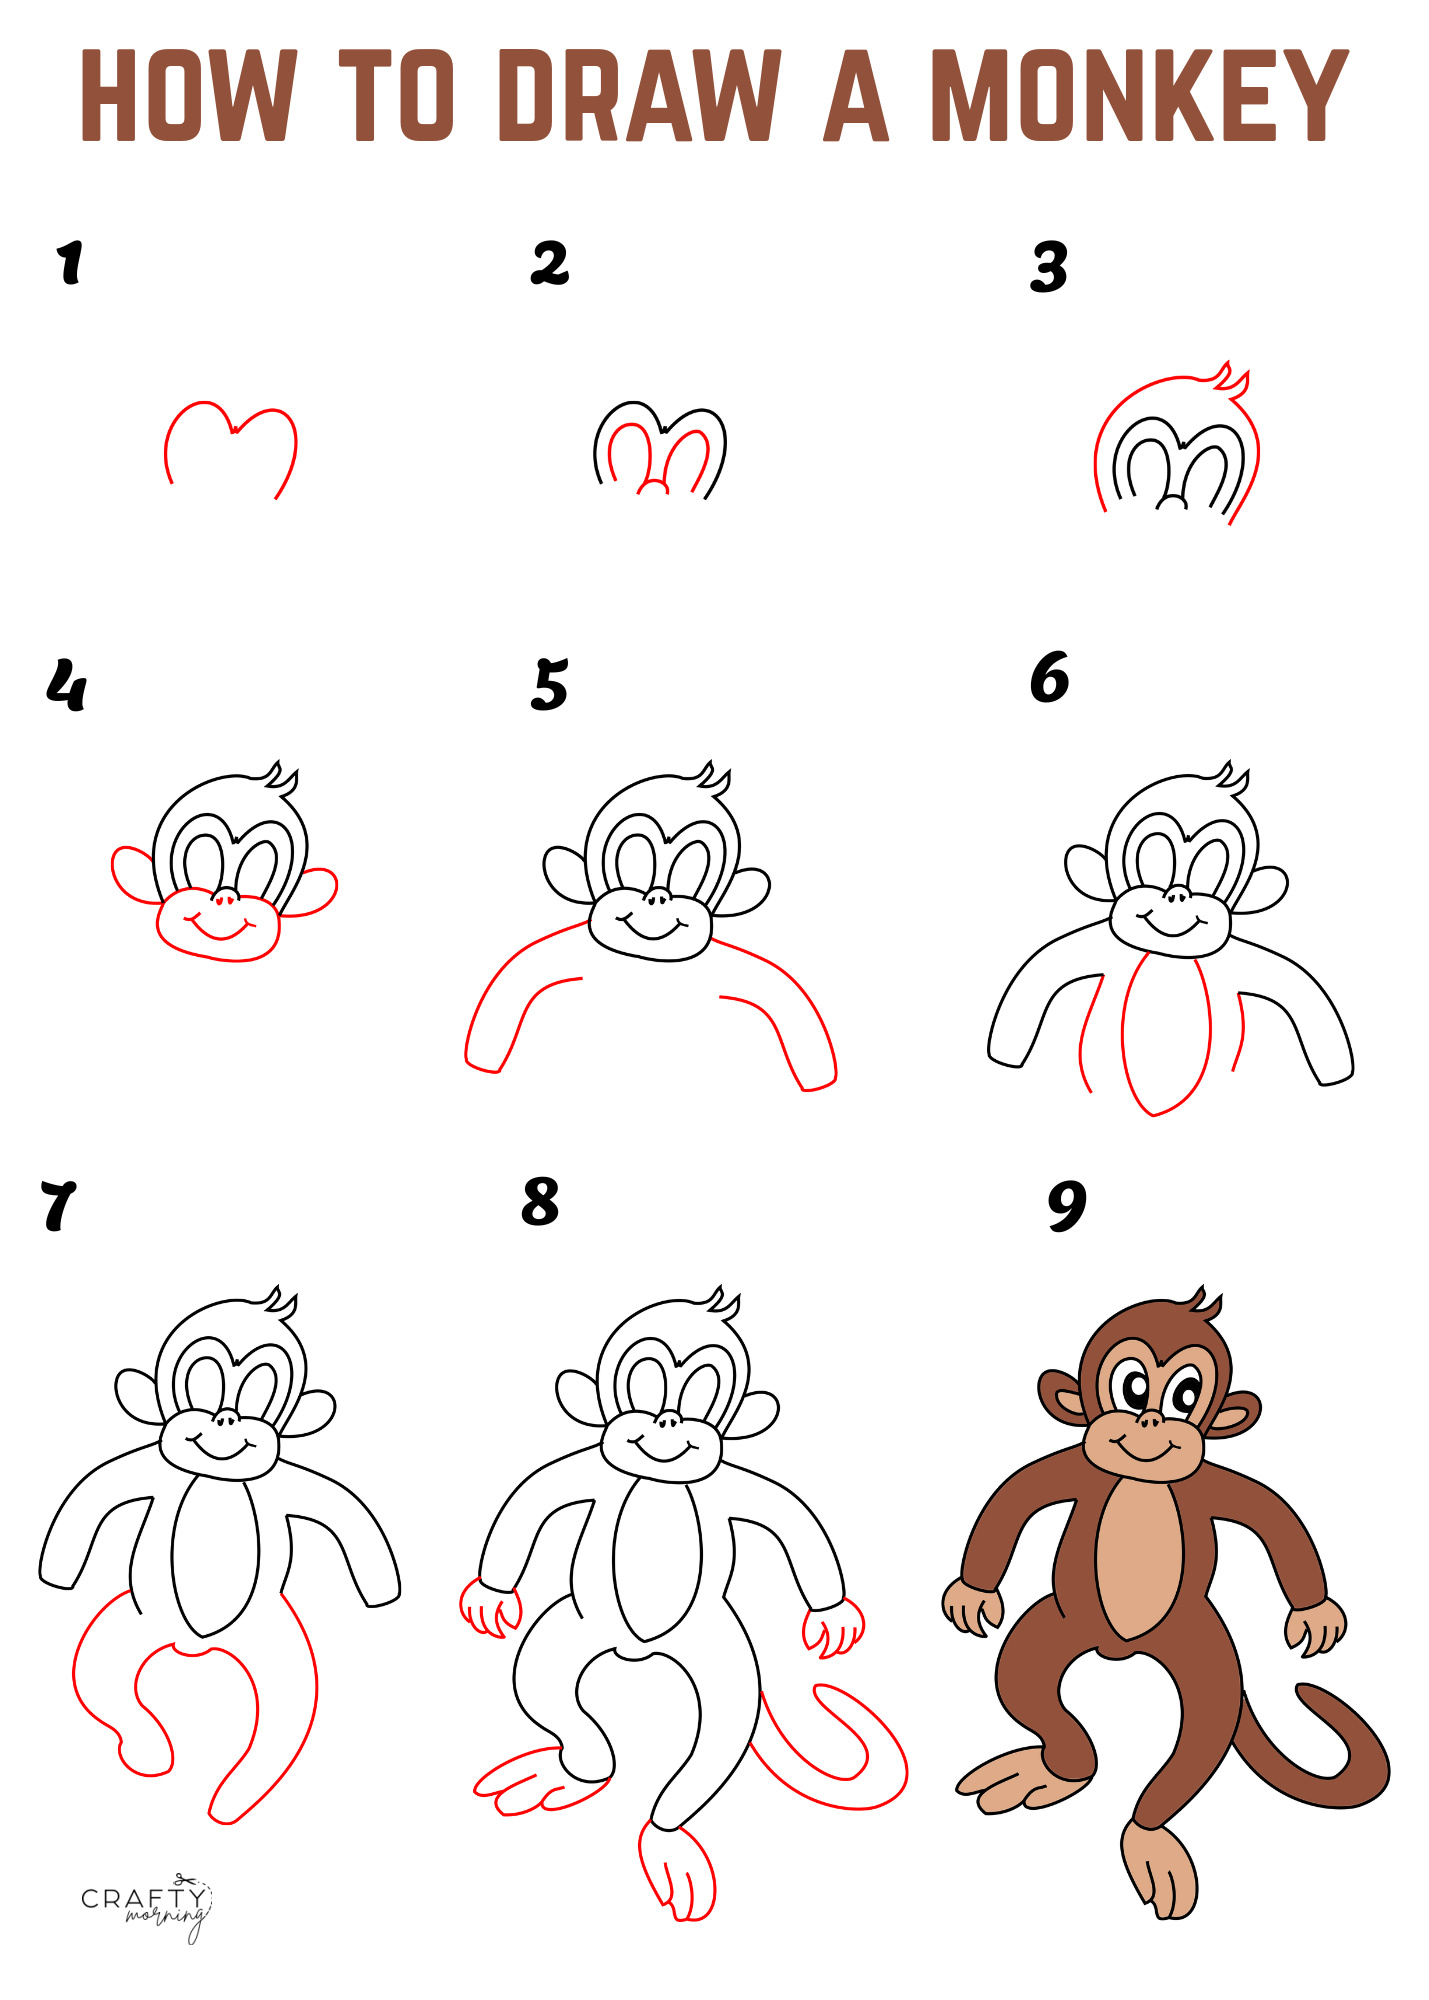 Monkey Drawing Images - Free Download on Freepik